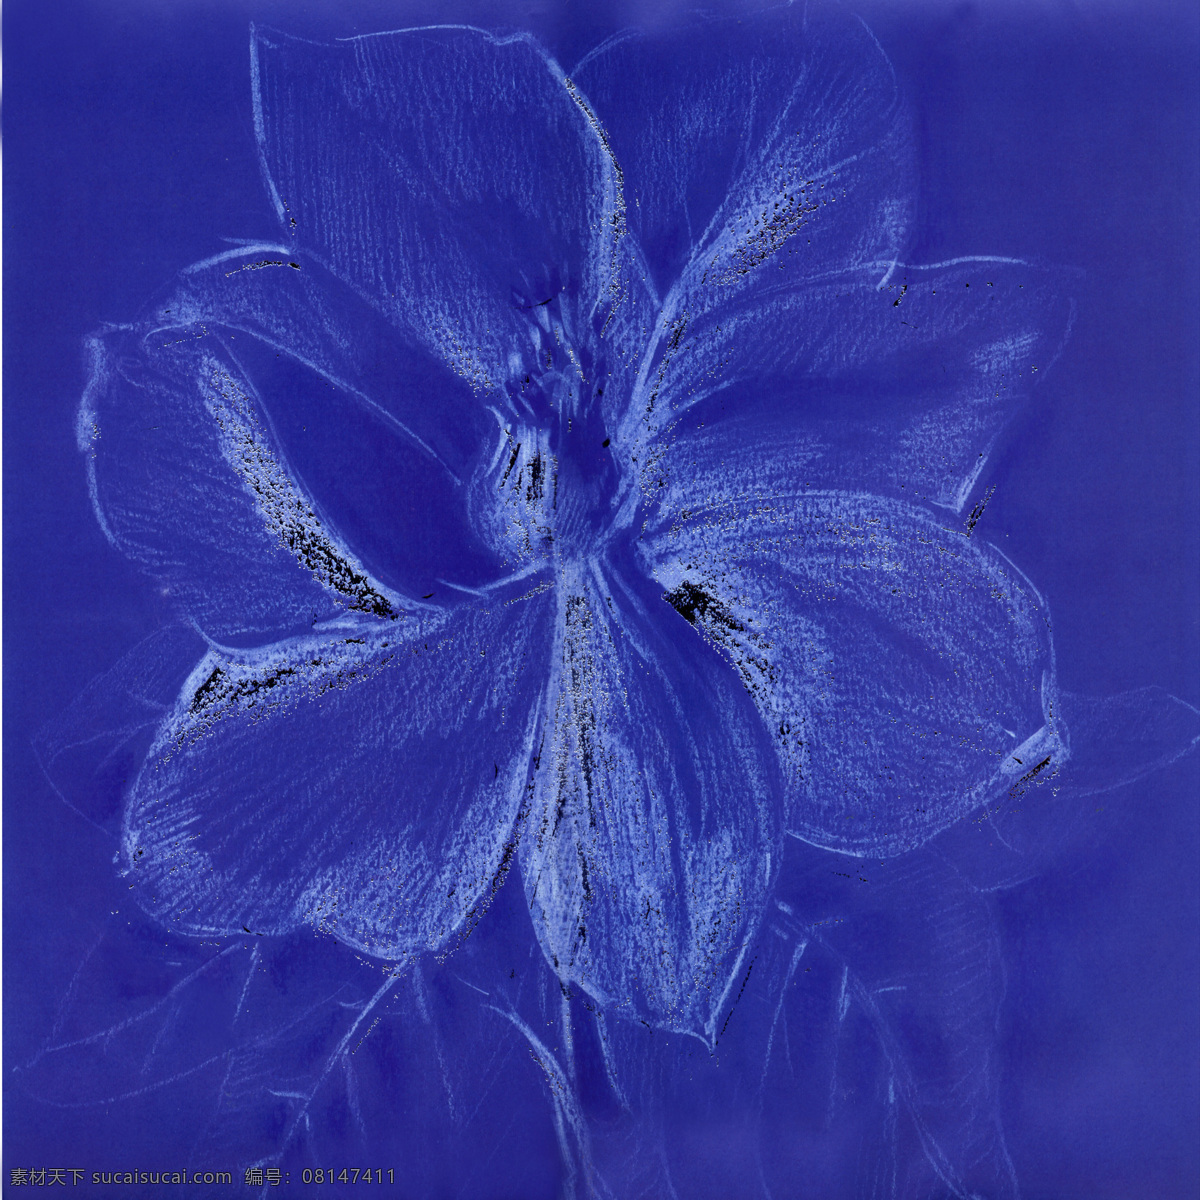 蓝色 盛开 花朵 油画 植物 花卉 装饰画 绘画 壁画 墙画 艺术 书画文字 文化艺术